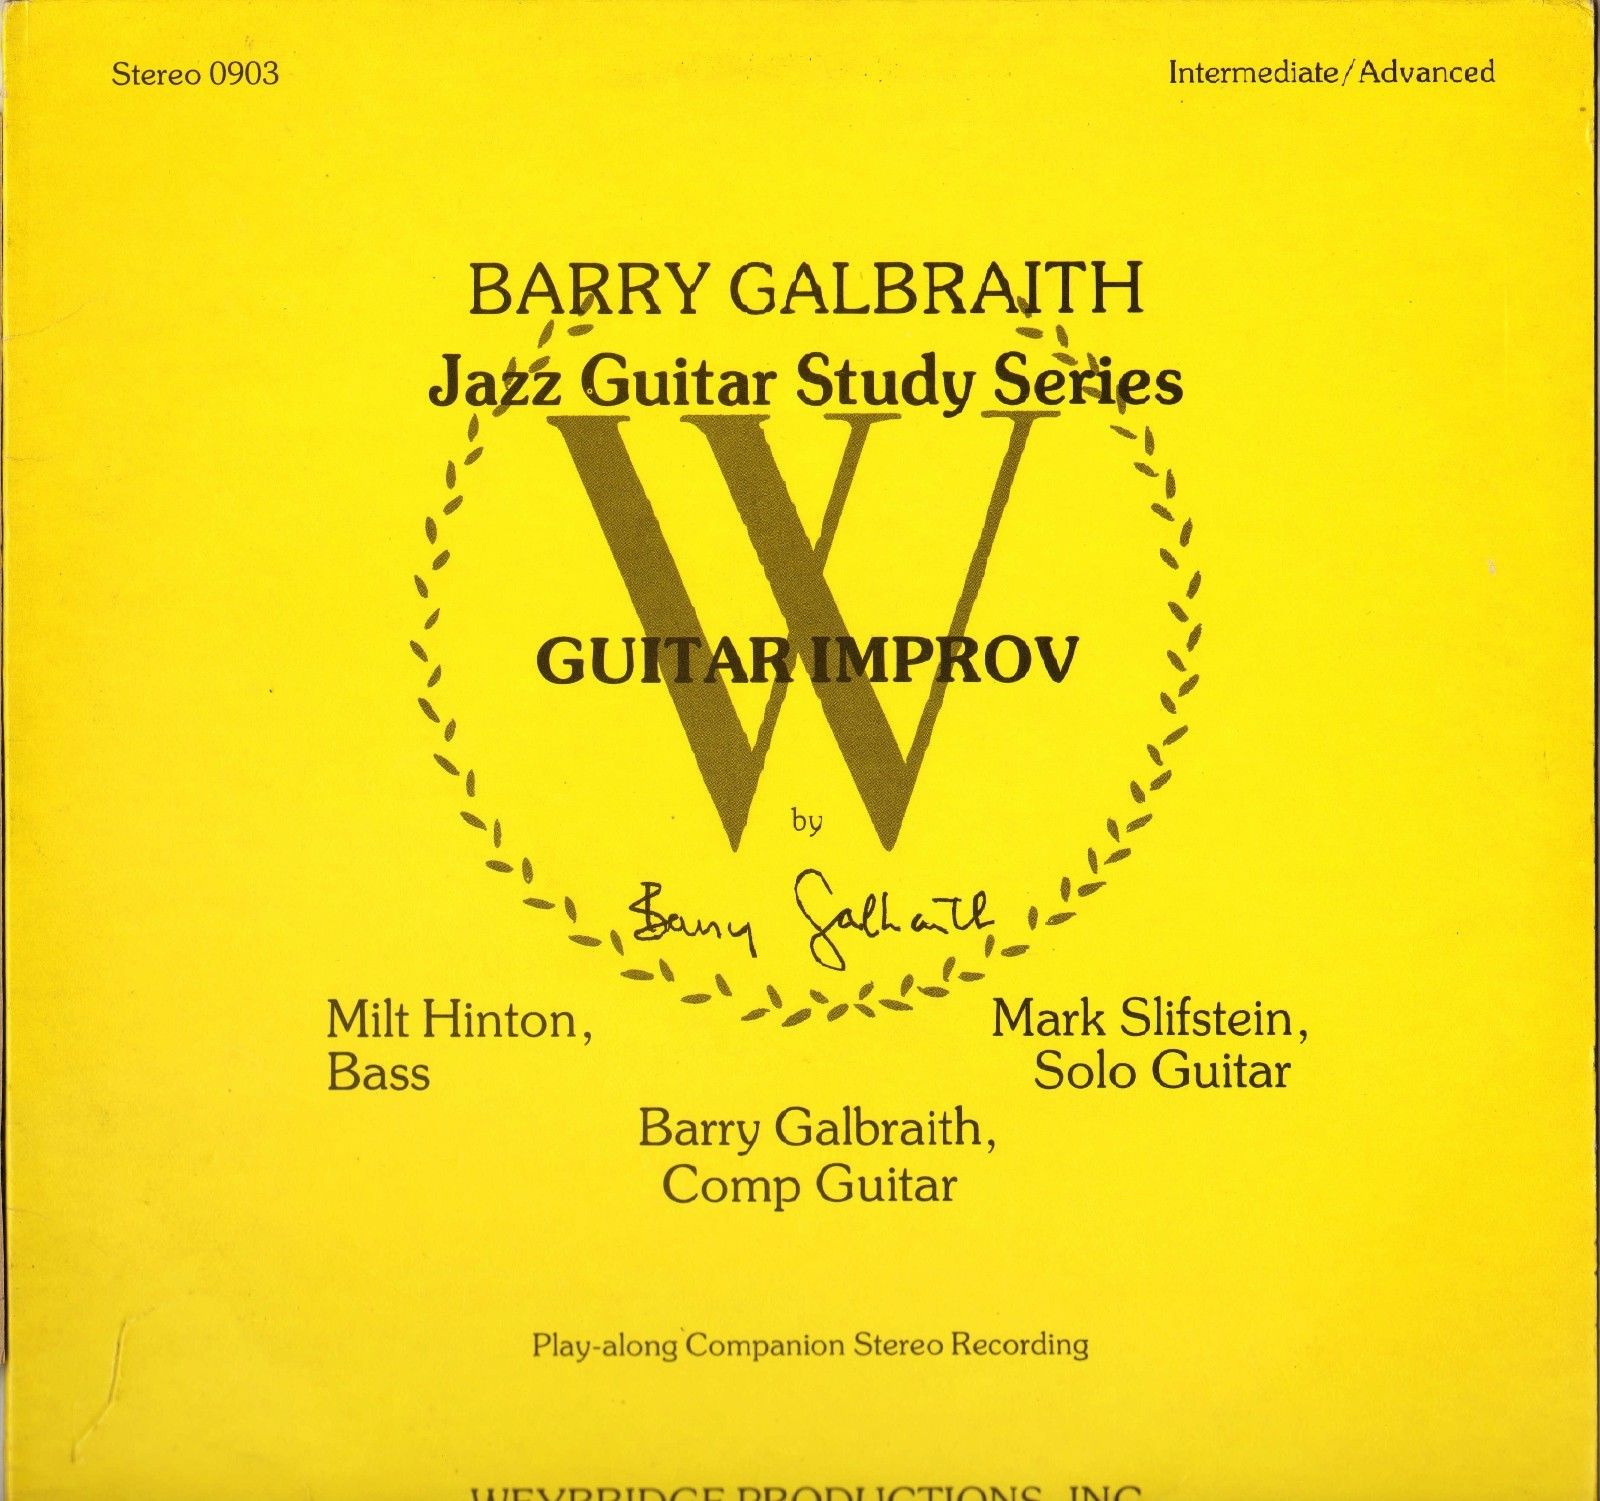 BARRY GALBRAITH - Guitar Improv cover 